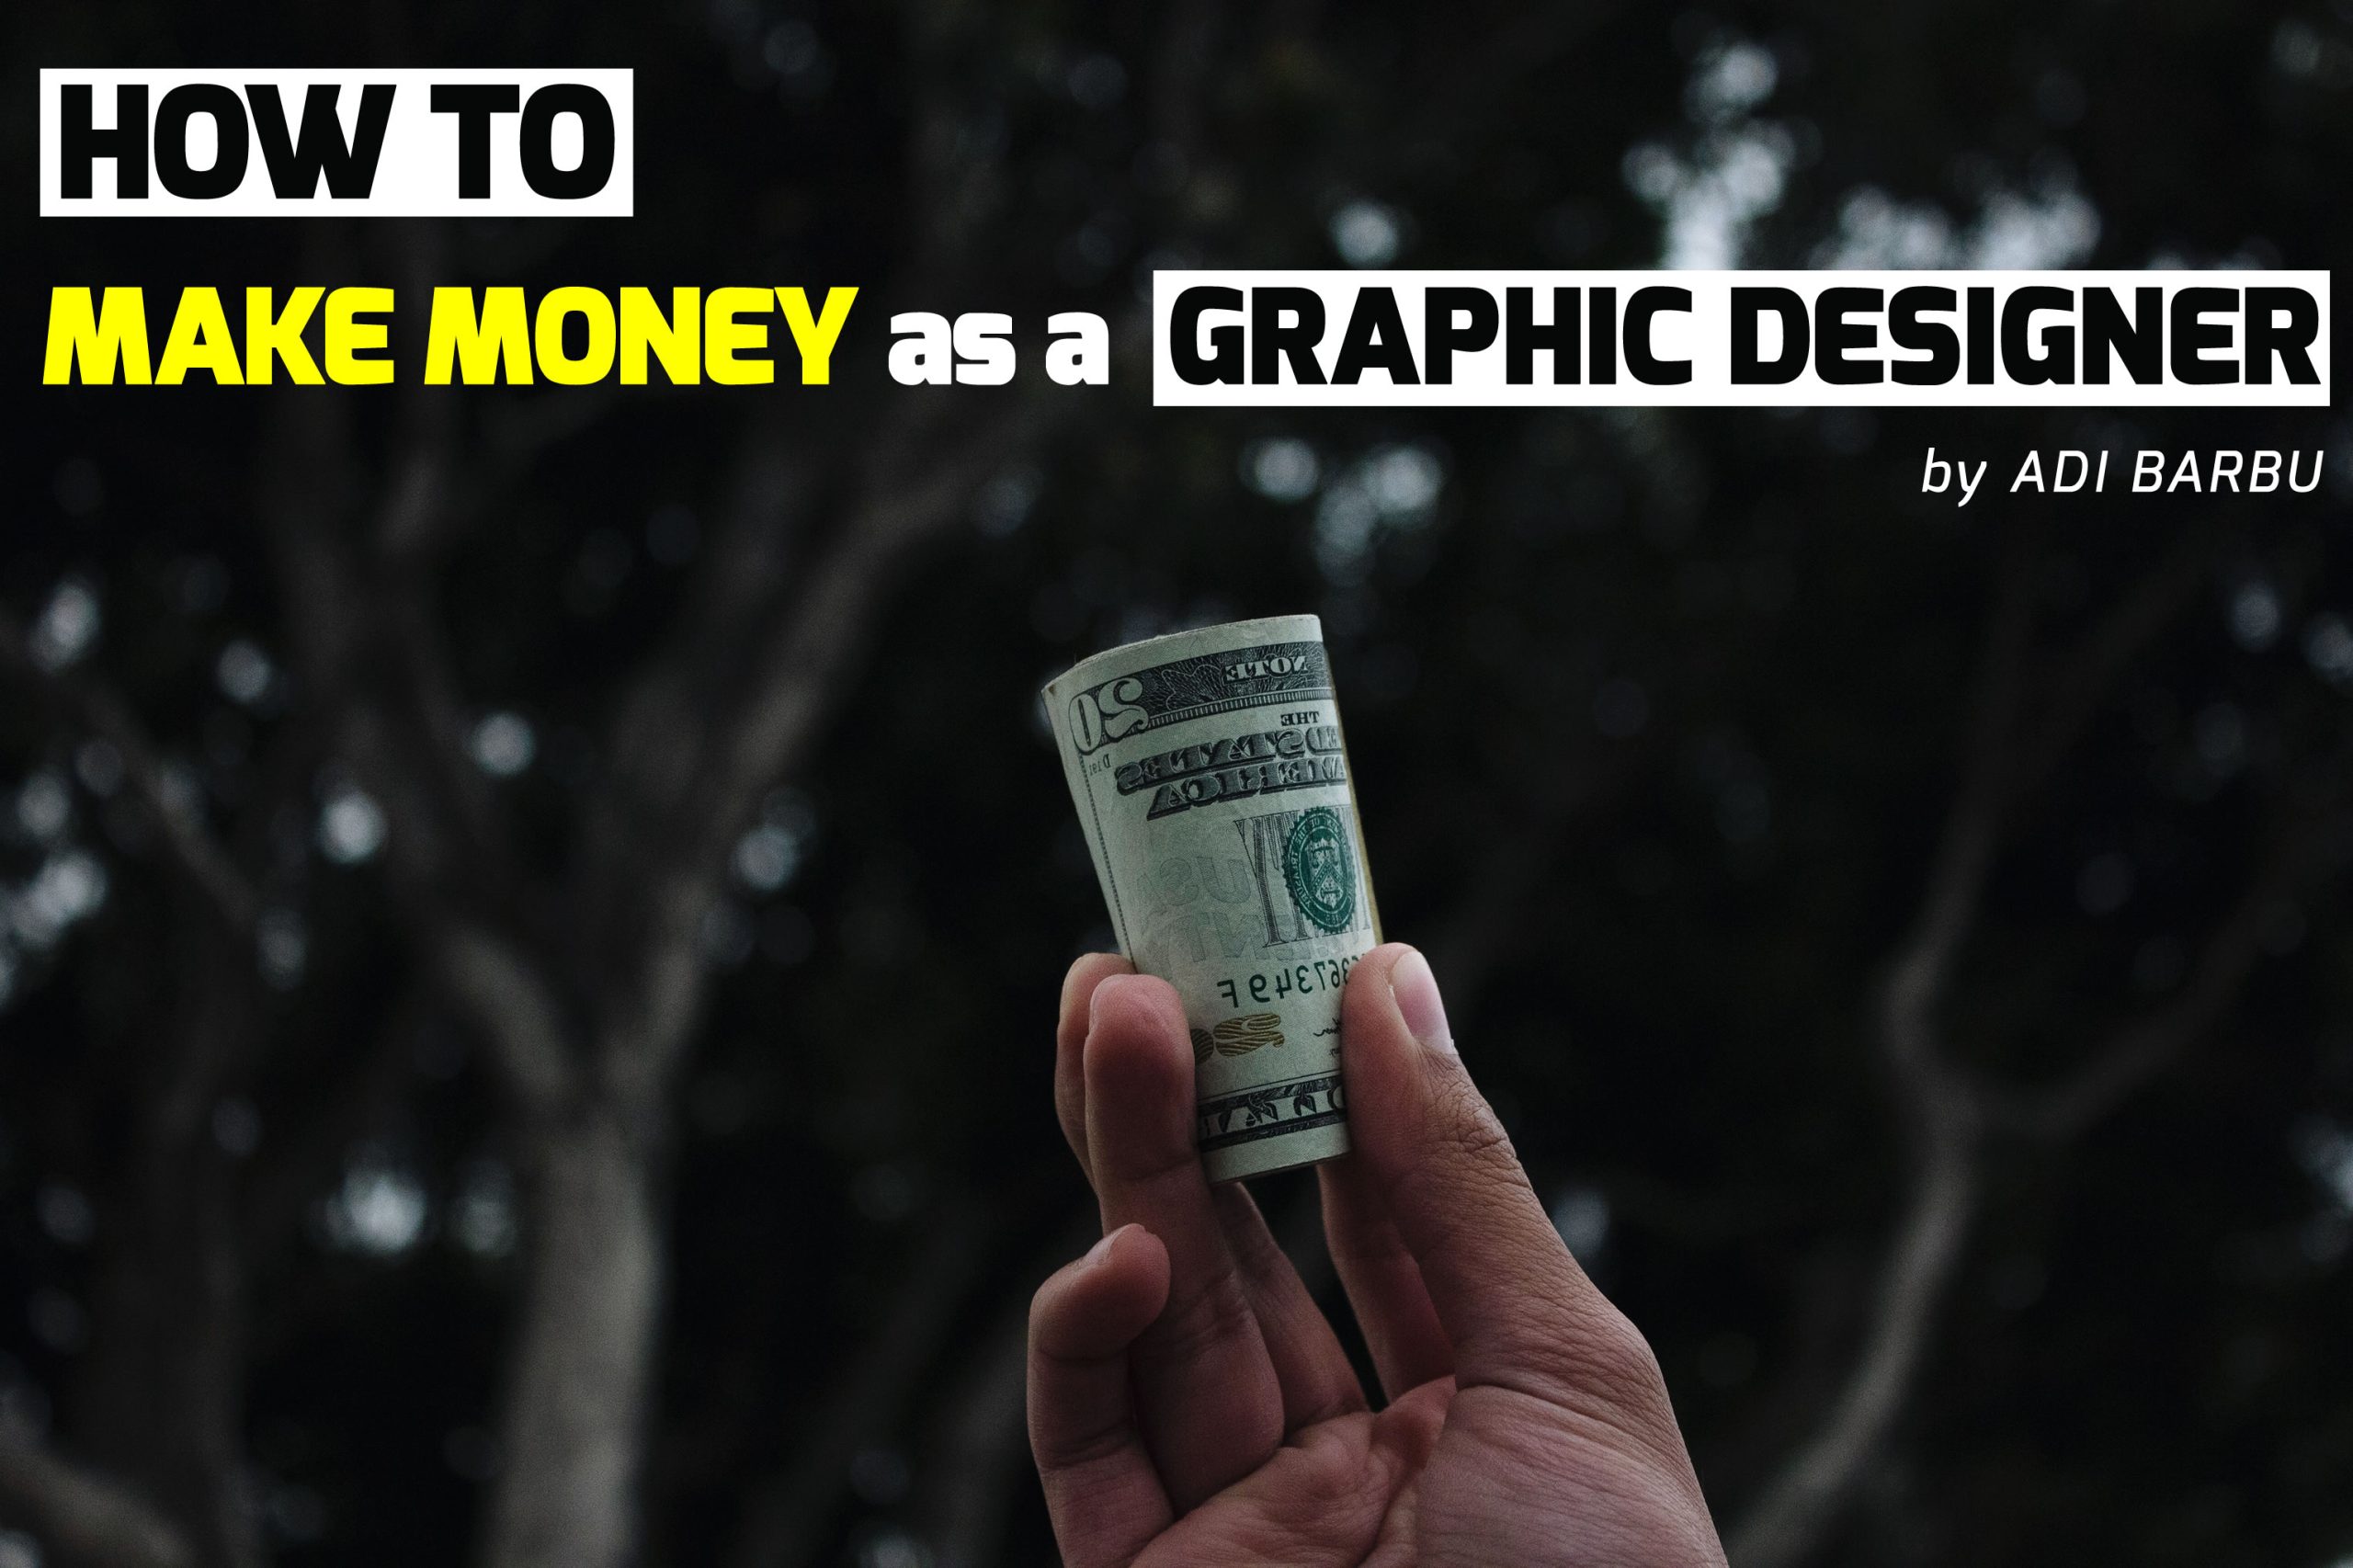 How to make money as a graphic designer